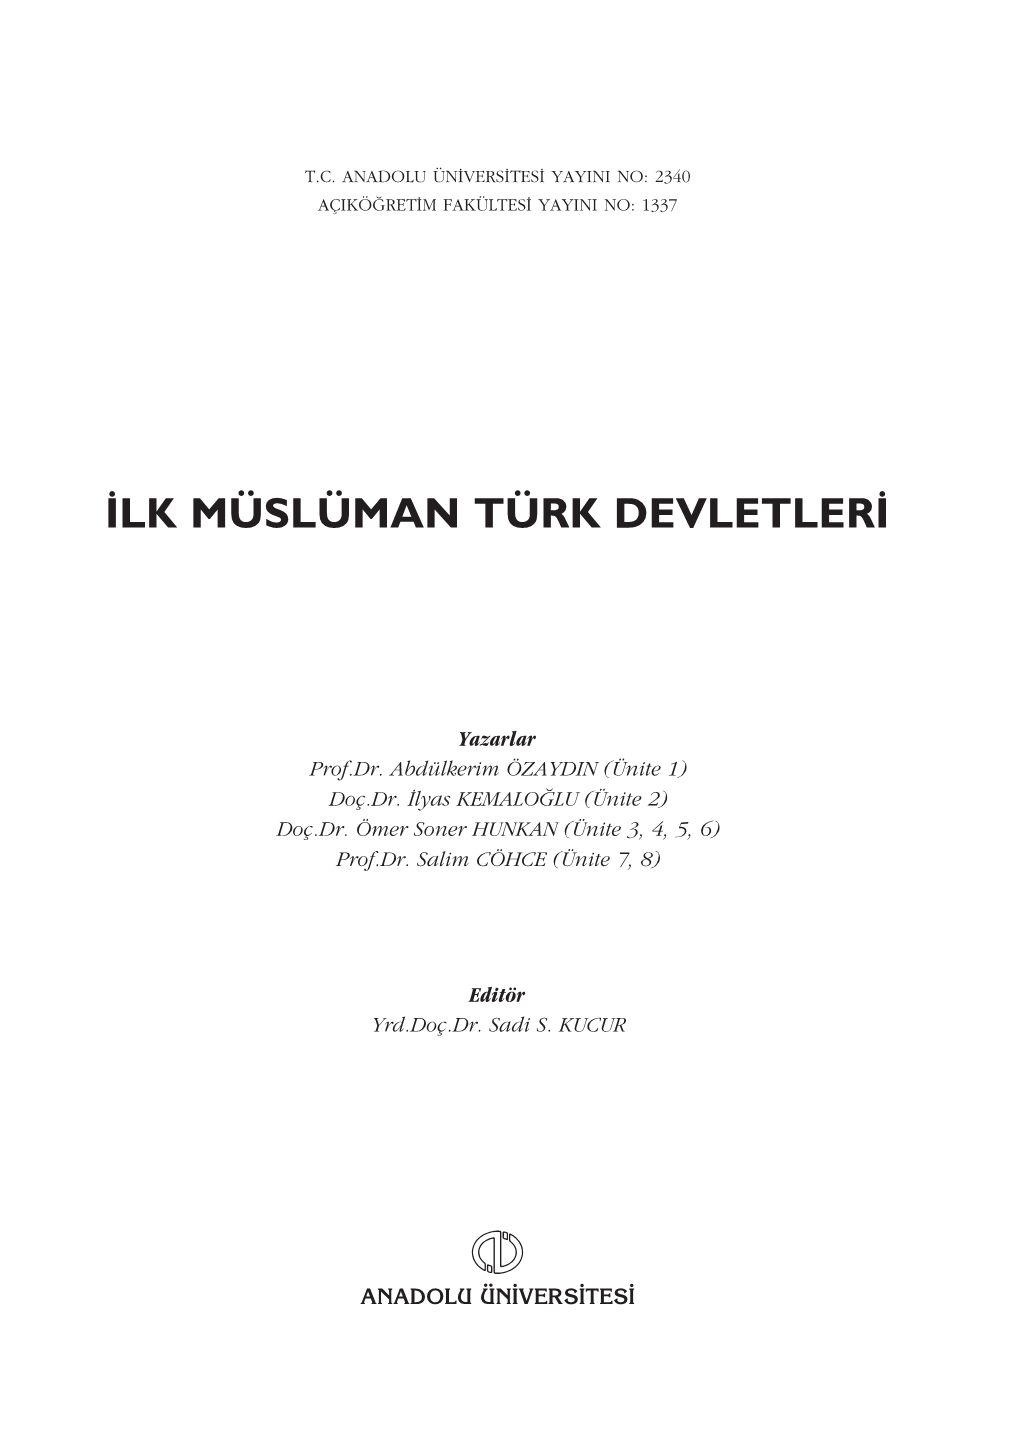 ‹Lk Müslüman Türk Devletler‹